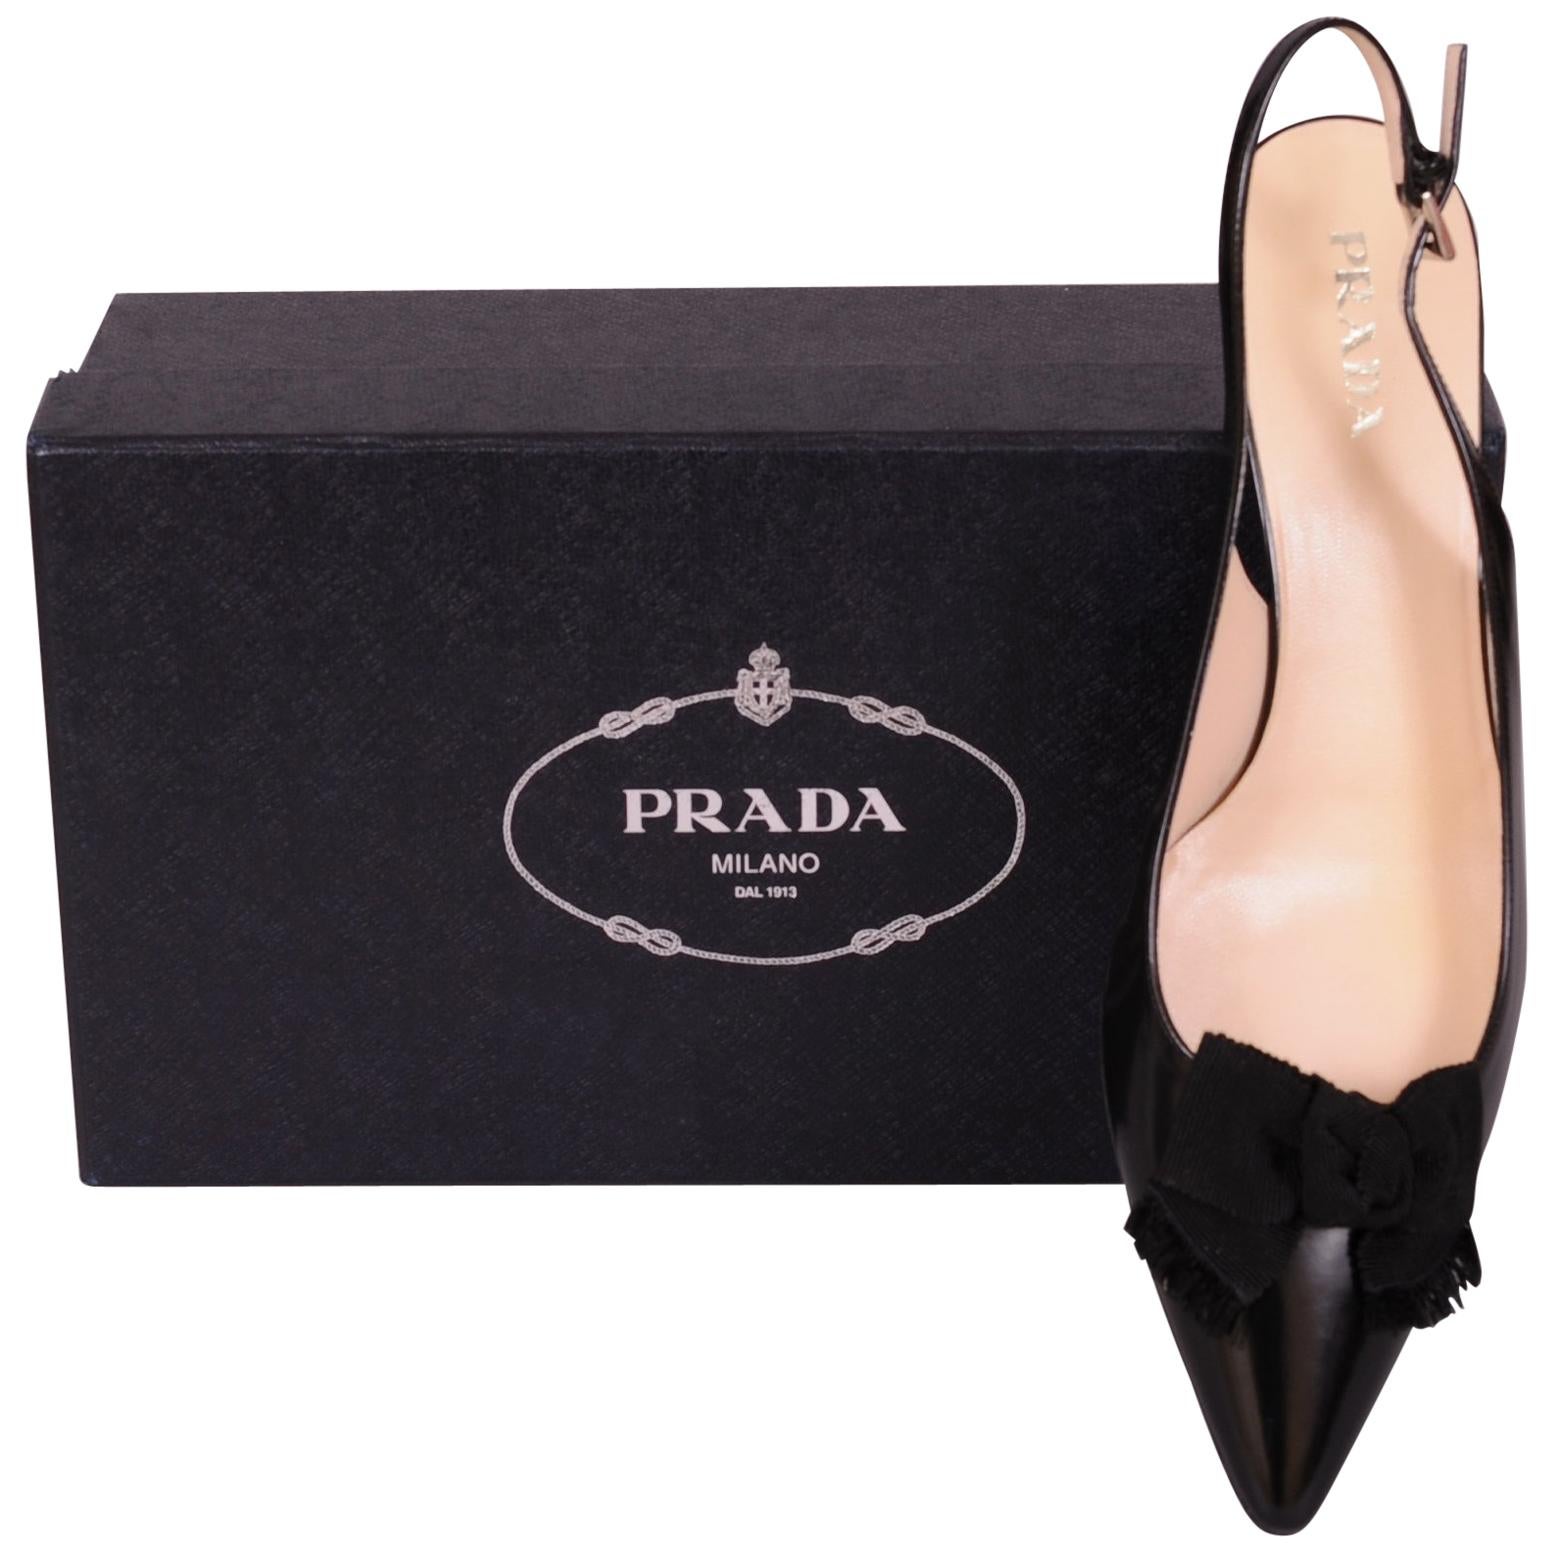 Prada Black Leather Kitten Heel Sling Backs Black Faille Bows Never Worn 10.5